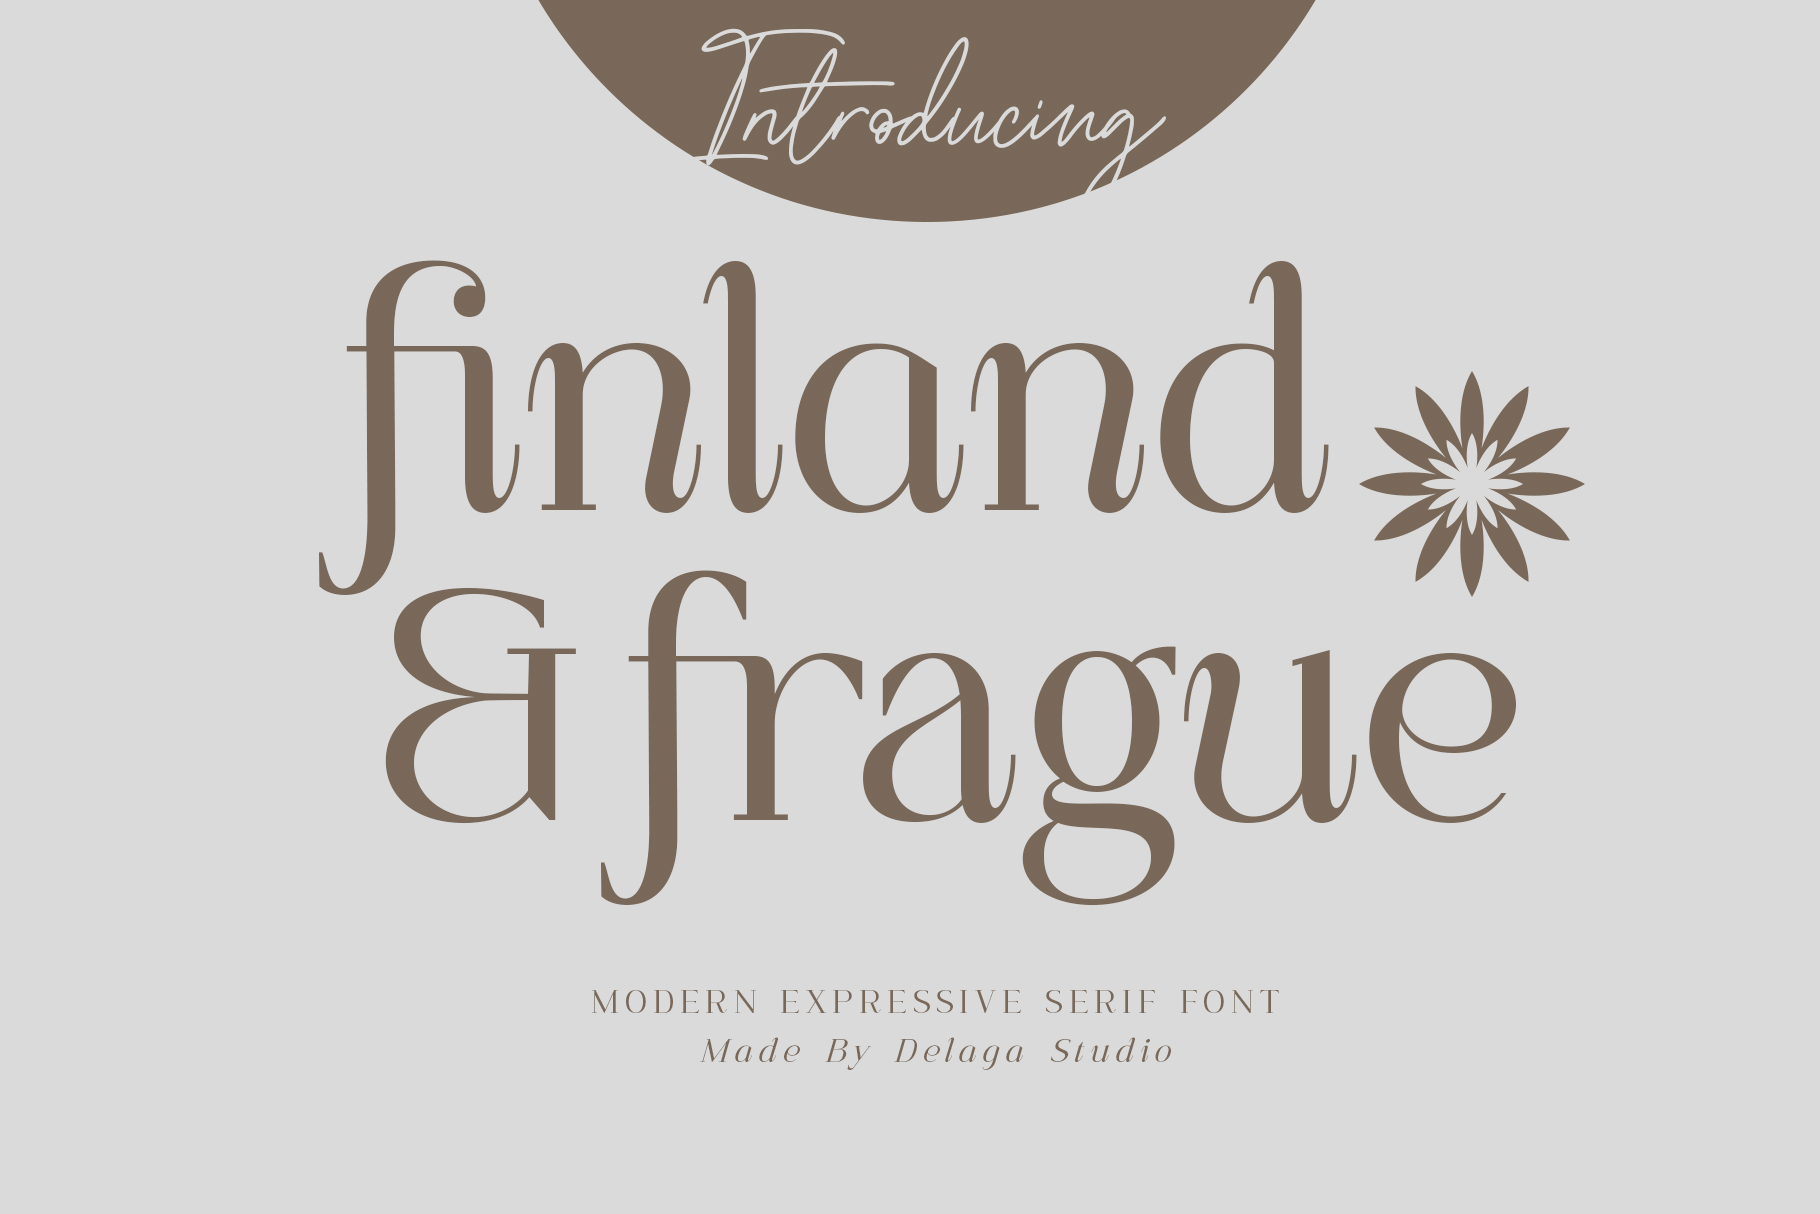 Finland & Frague